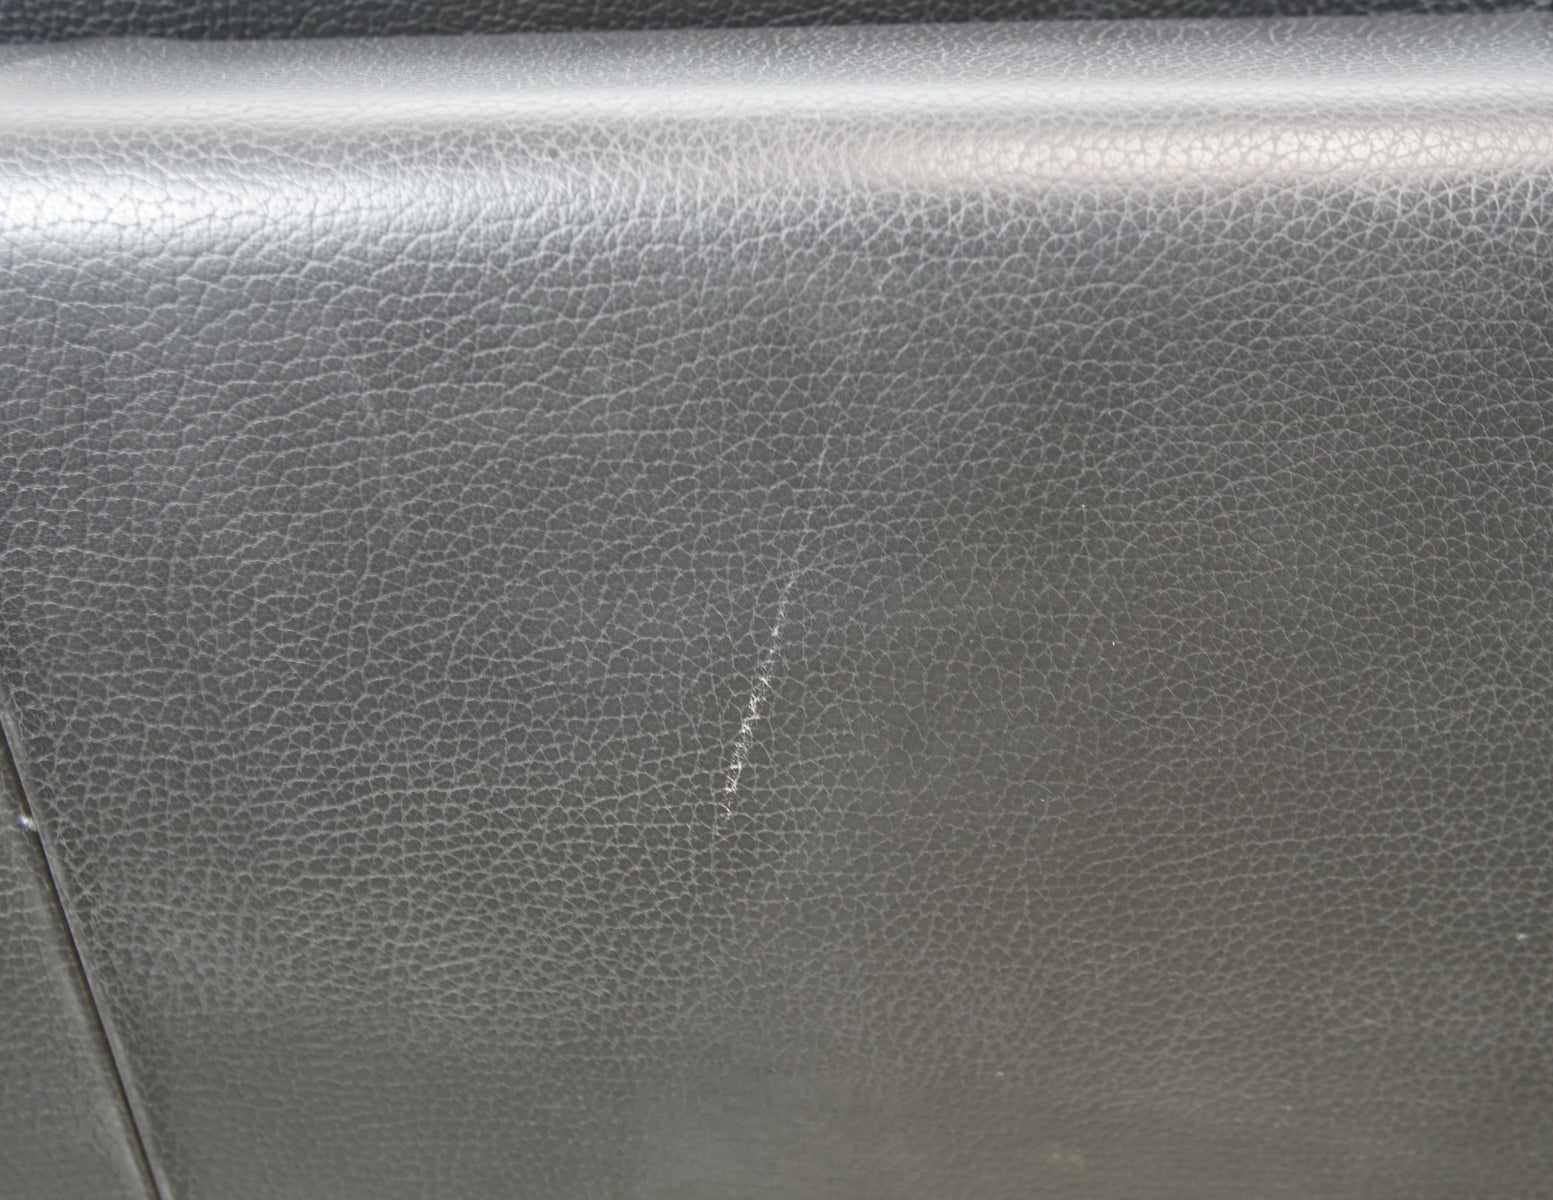 Roche Bobois 3 Seater Leather Sofa